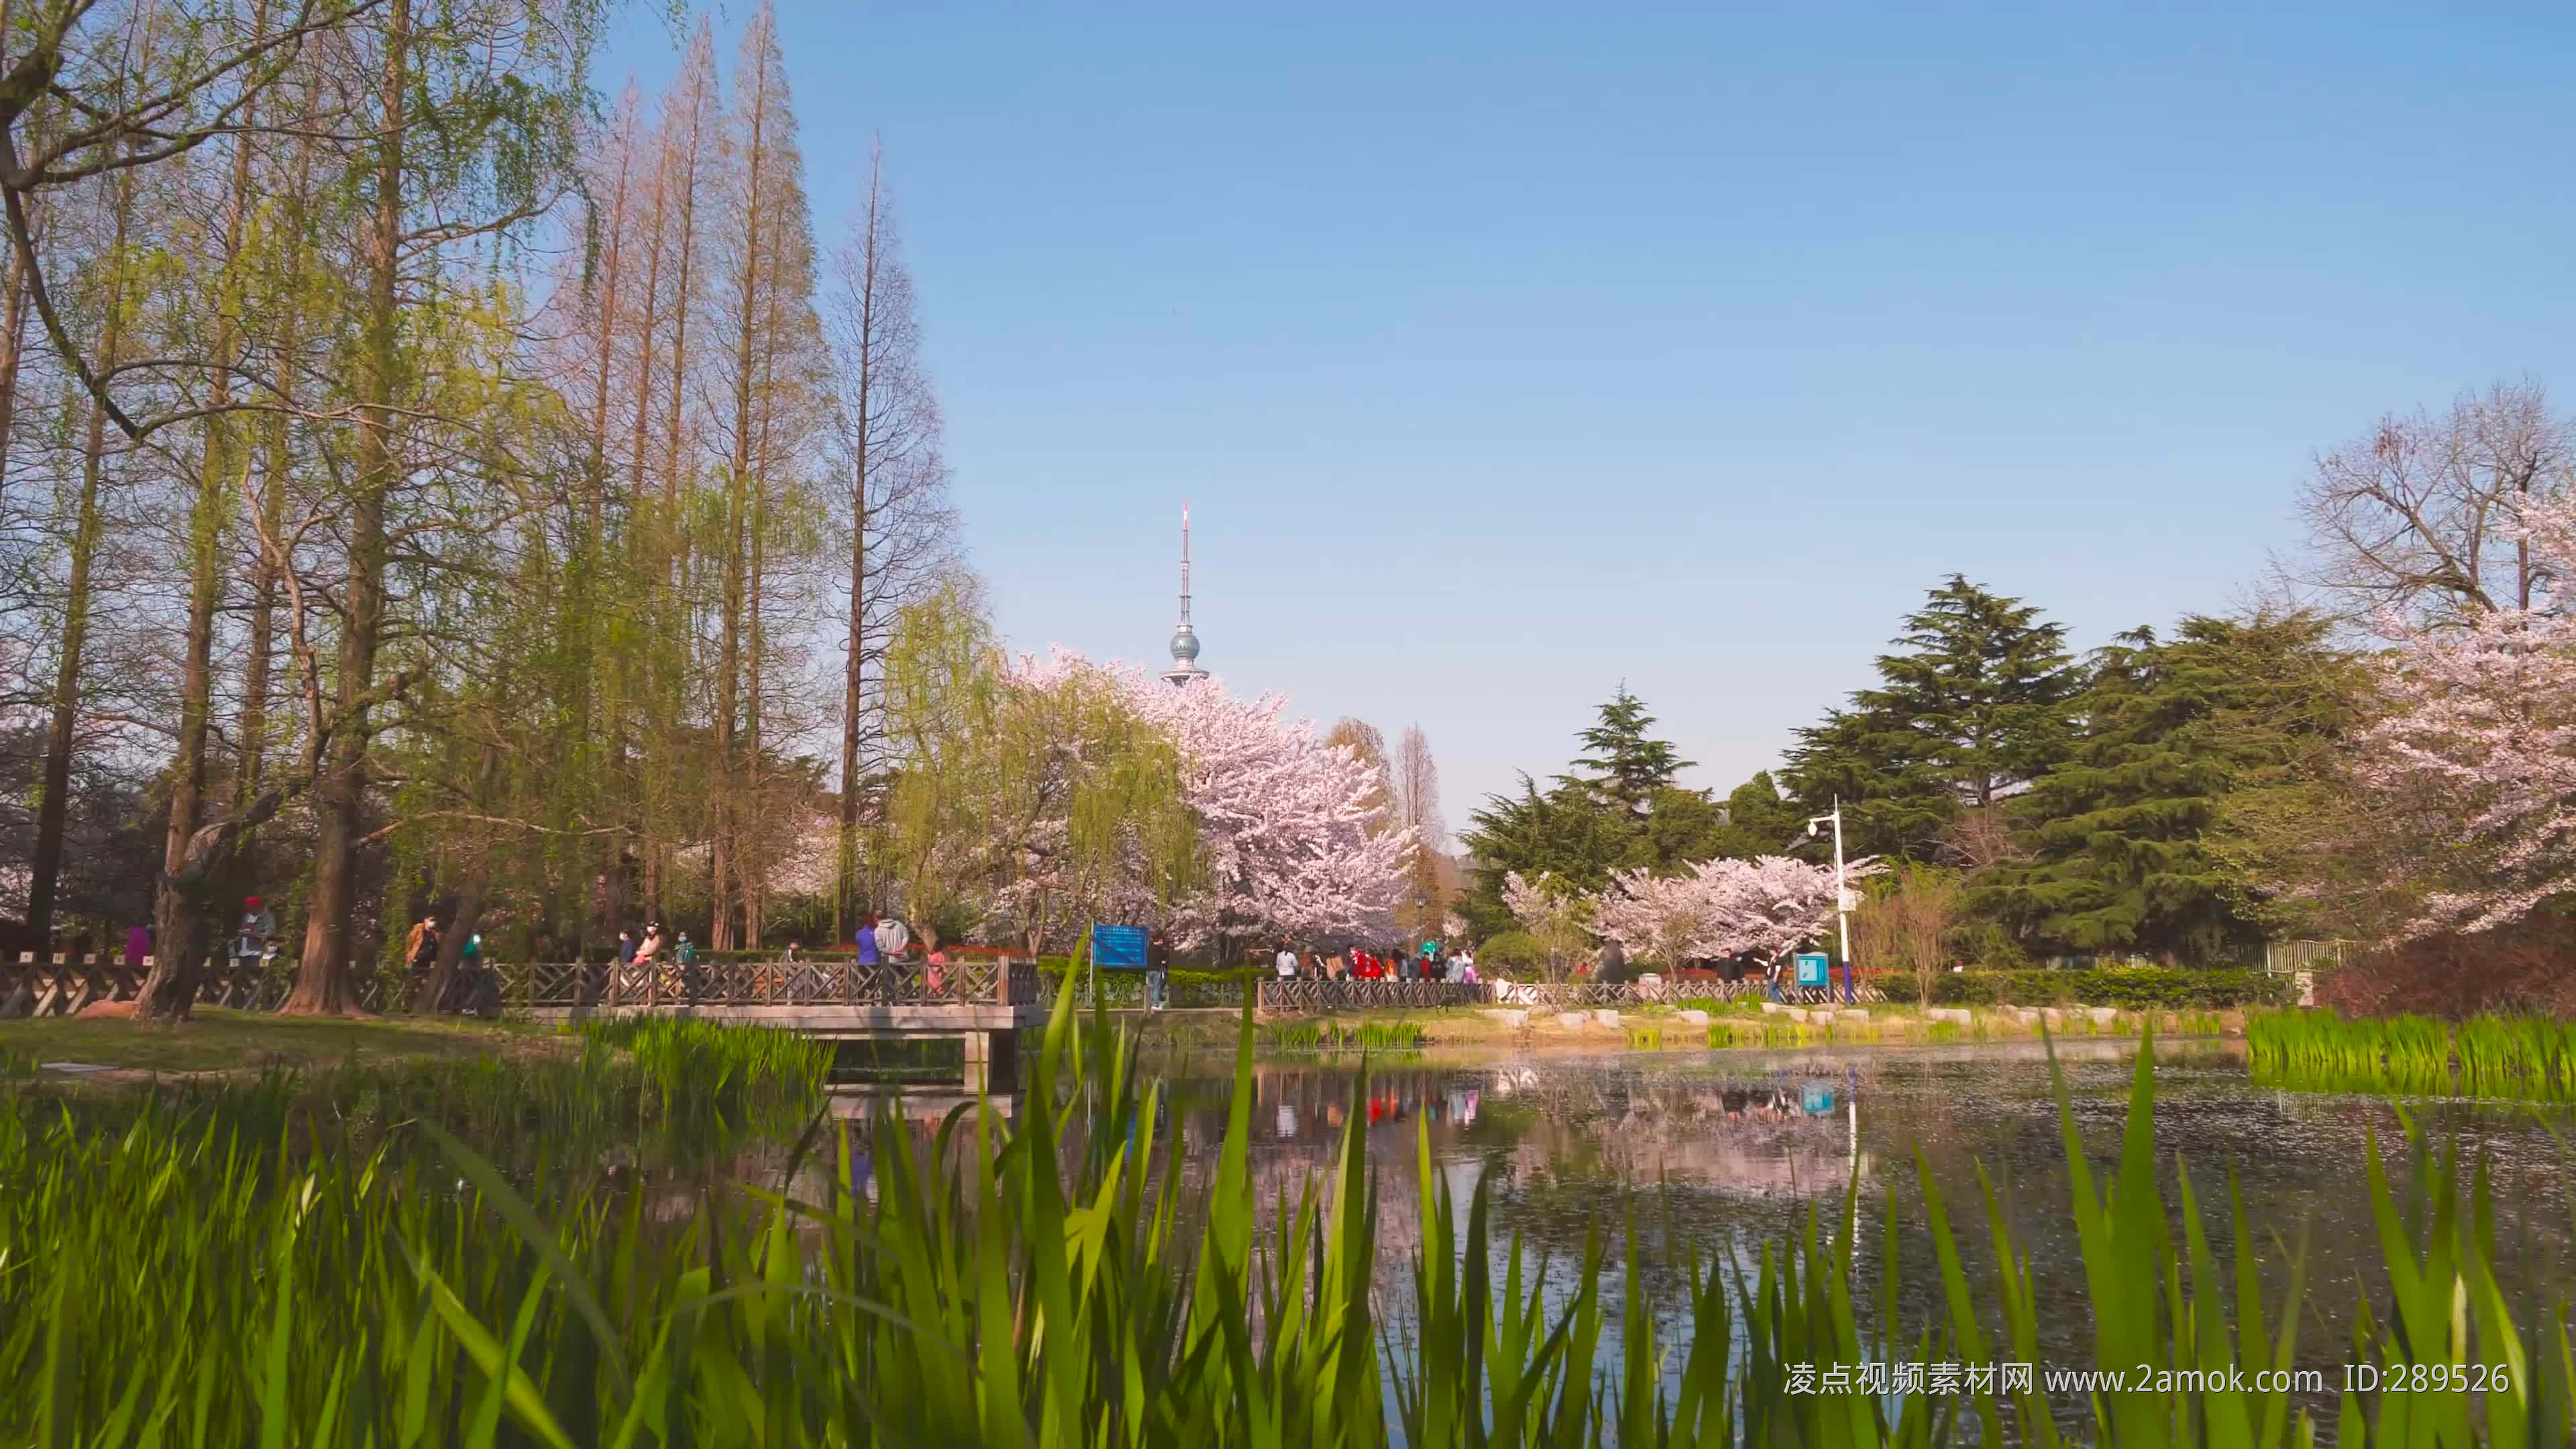 公园春天的樱花林图片 - 免费可商用图片 - CC0素材网